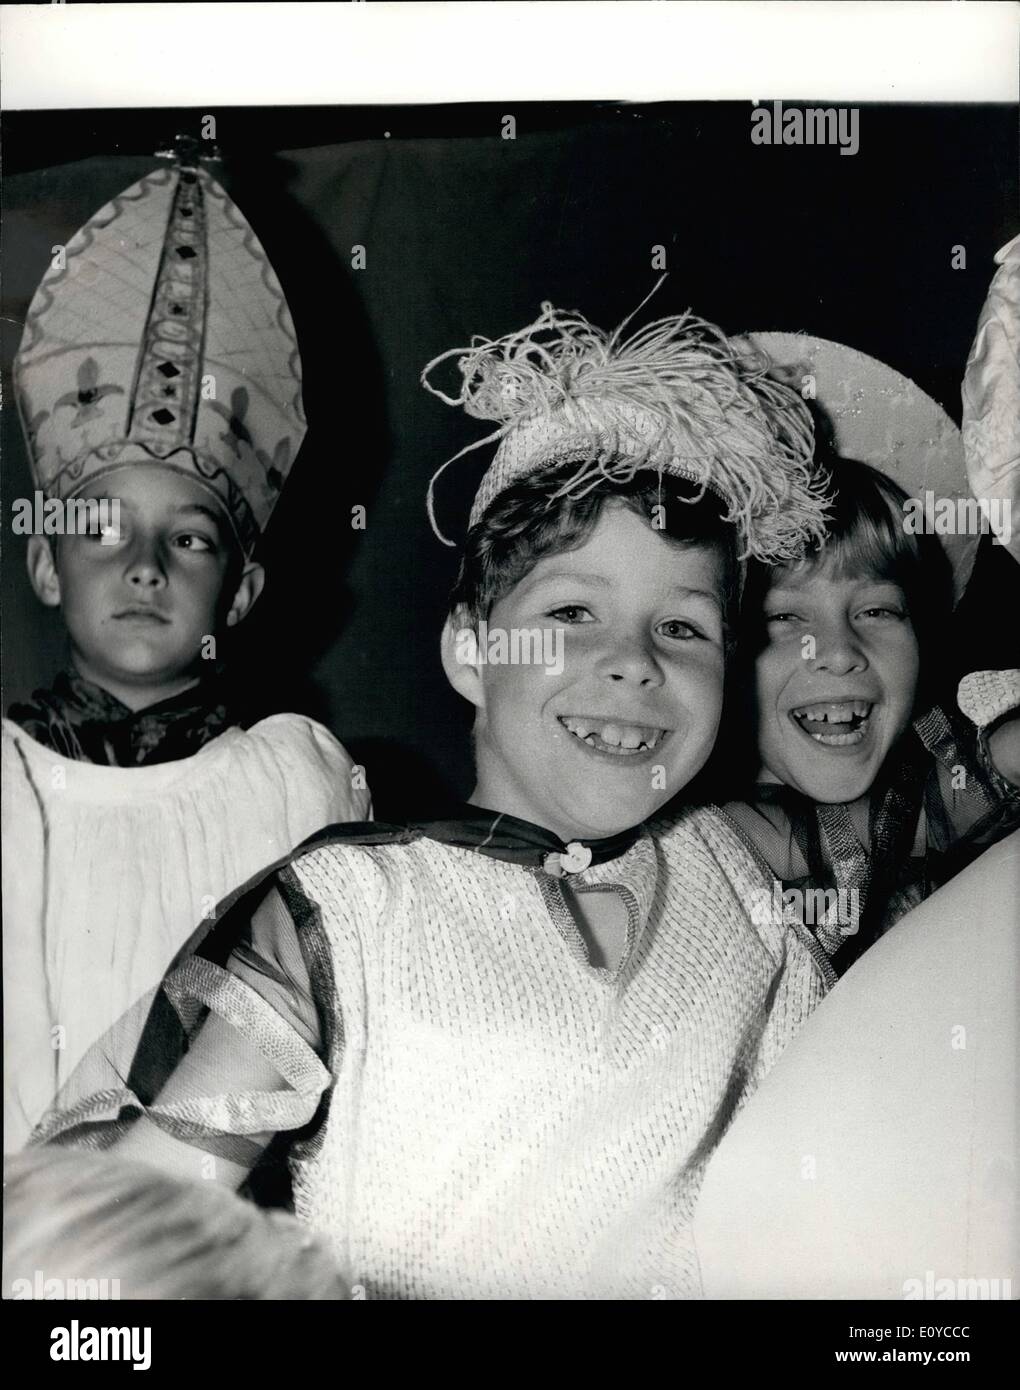 11. November 1969 - machen Viscount Linley Bühnendebüt; Foto zeigt Viscount Linley, 8 Sohn von Prinzessin Margaret und Earl of Snowdon, machen sein Bühnendebüt in seiner ersten Amtszeit an Ashdown House Preparatory School, Forest Row, Sussex. Er spielte einen jungen Seite in '' Frau Malone'', ein Märchen über eine Irin. Stockfoto